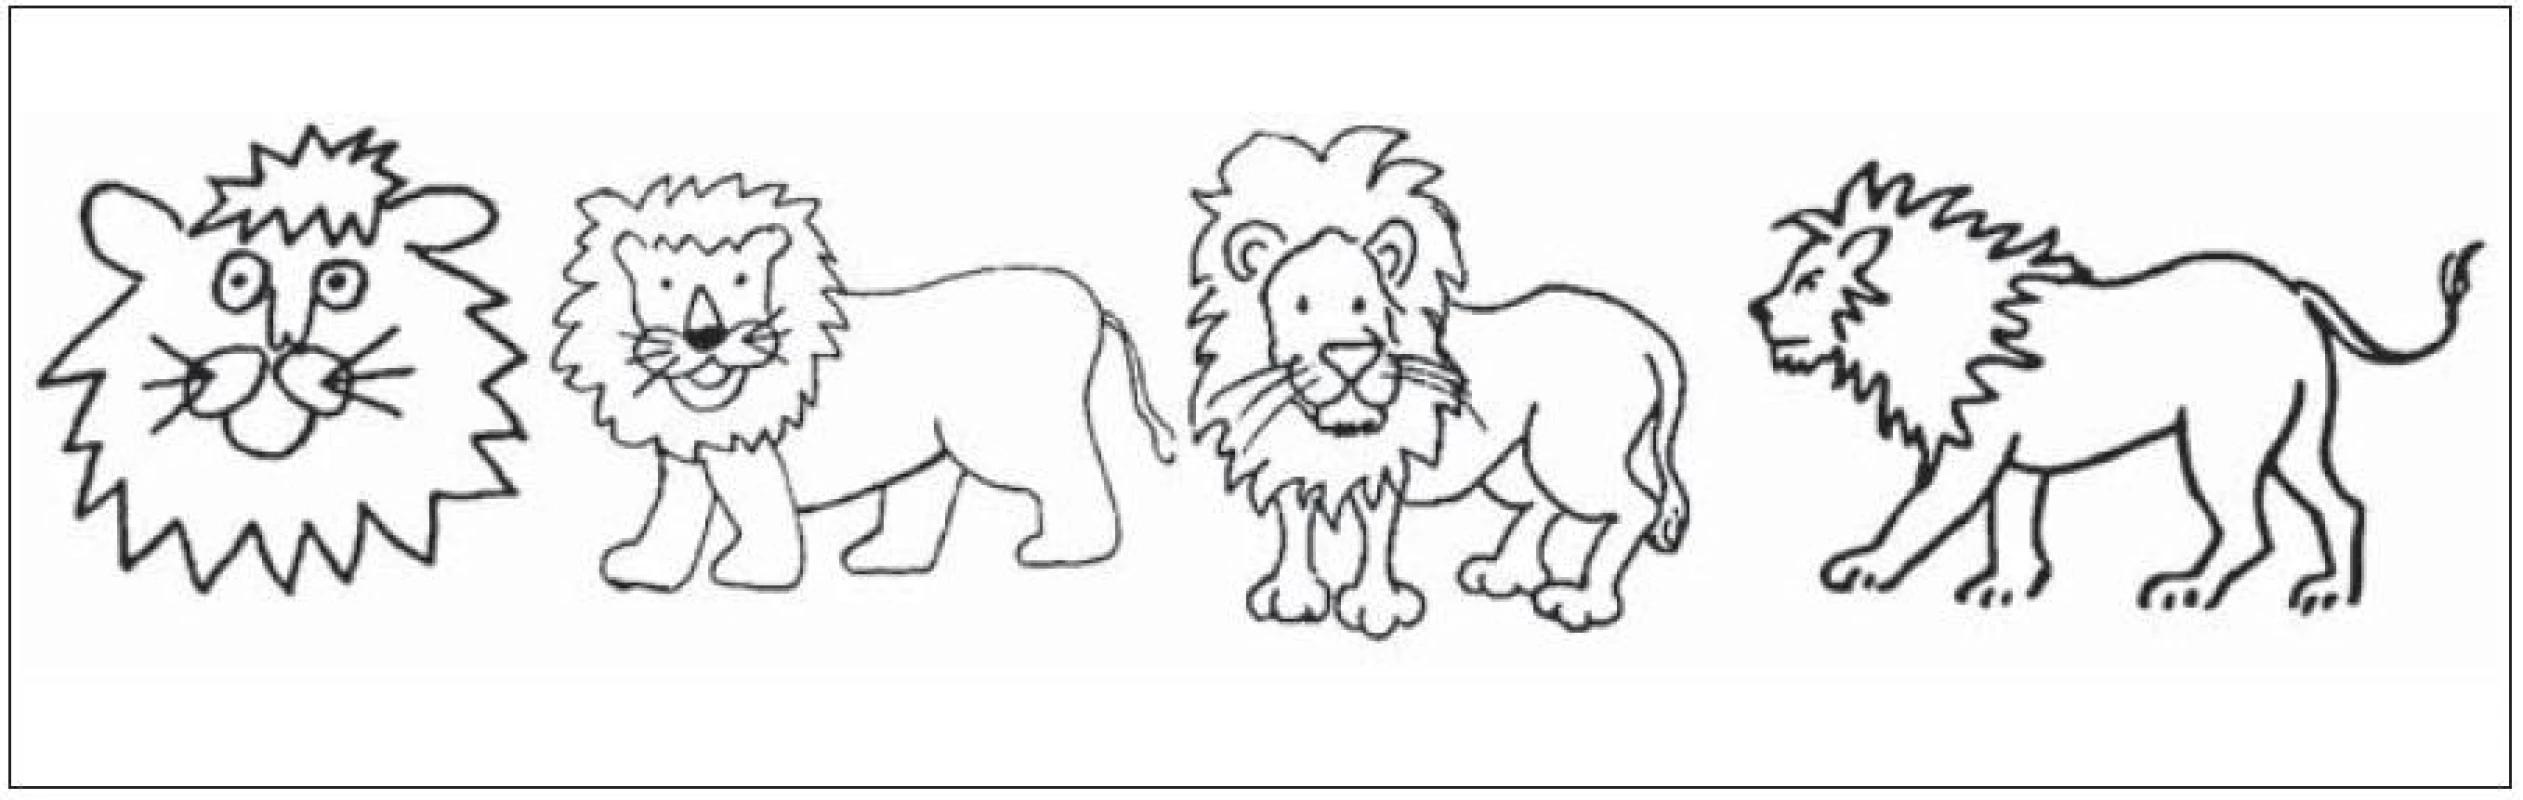 Příklad proměn obrázku „lev“ od první do poslední sady obrázků.